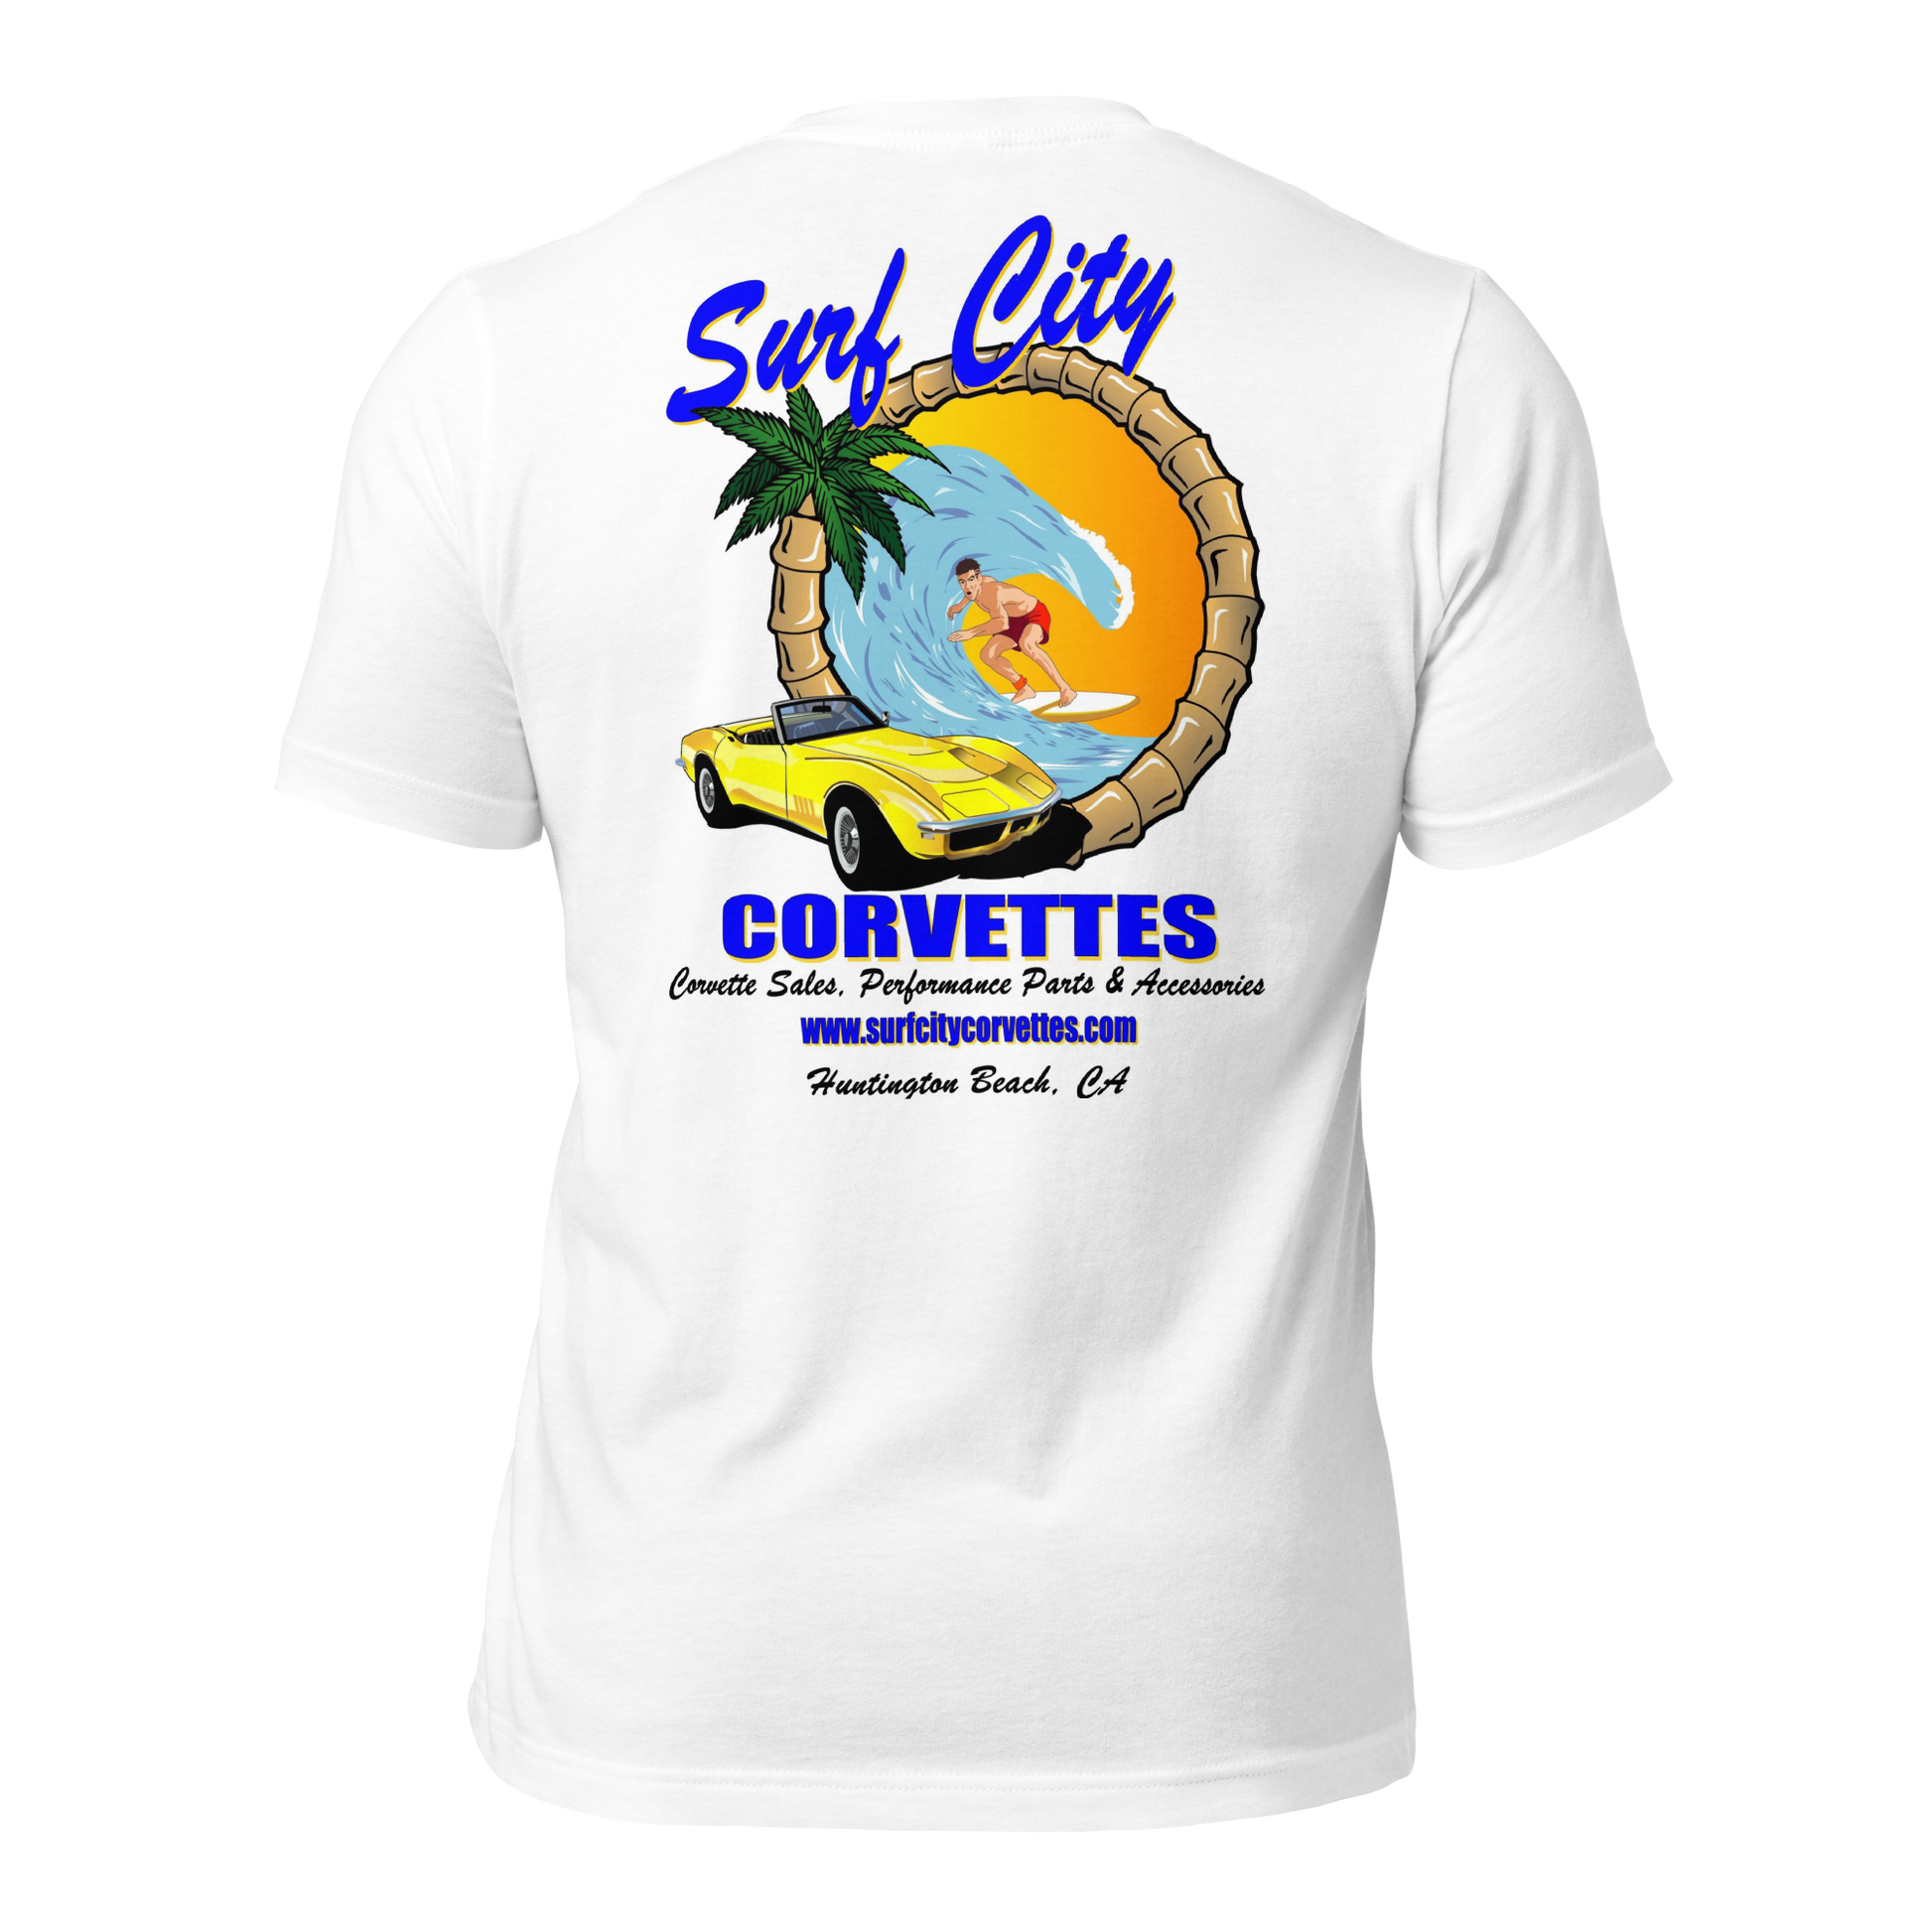 Surf City Corvettes T-Shirt - White 